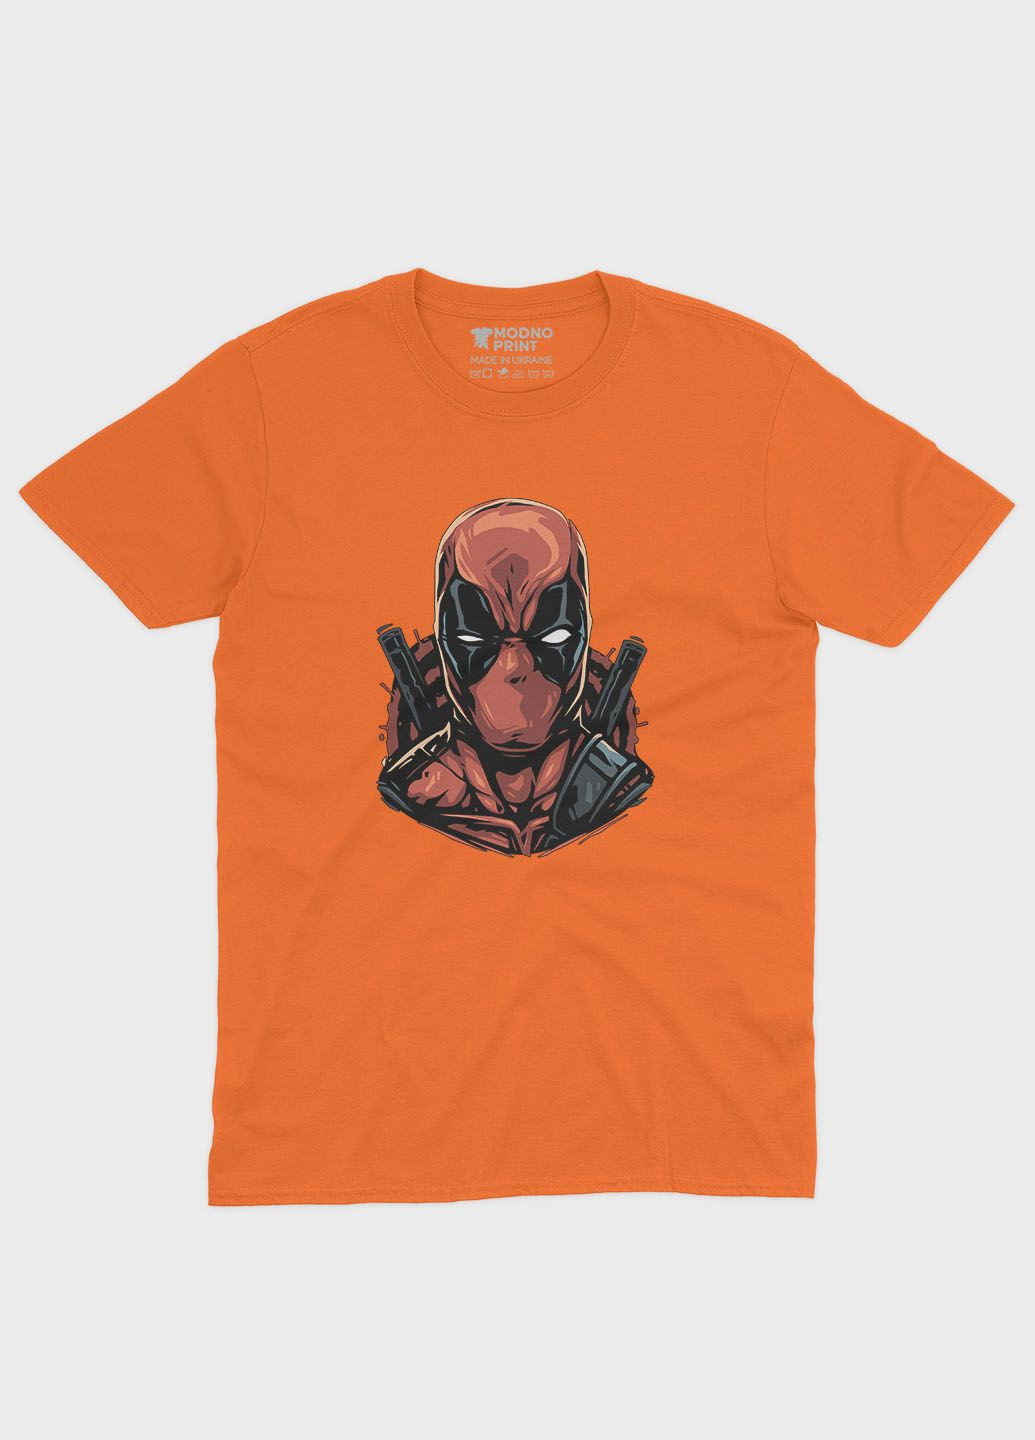 Оранжевая демисезонная футболка для мальчика с принтом антигероя - дедпул (ts001-1-ora-006-015-031-b) Modno